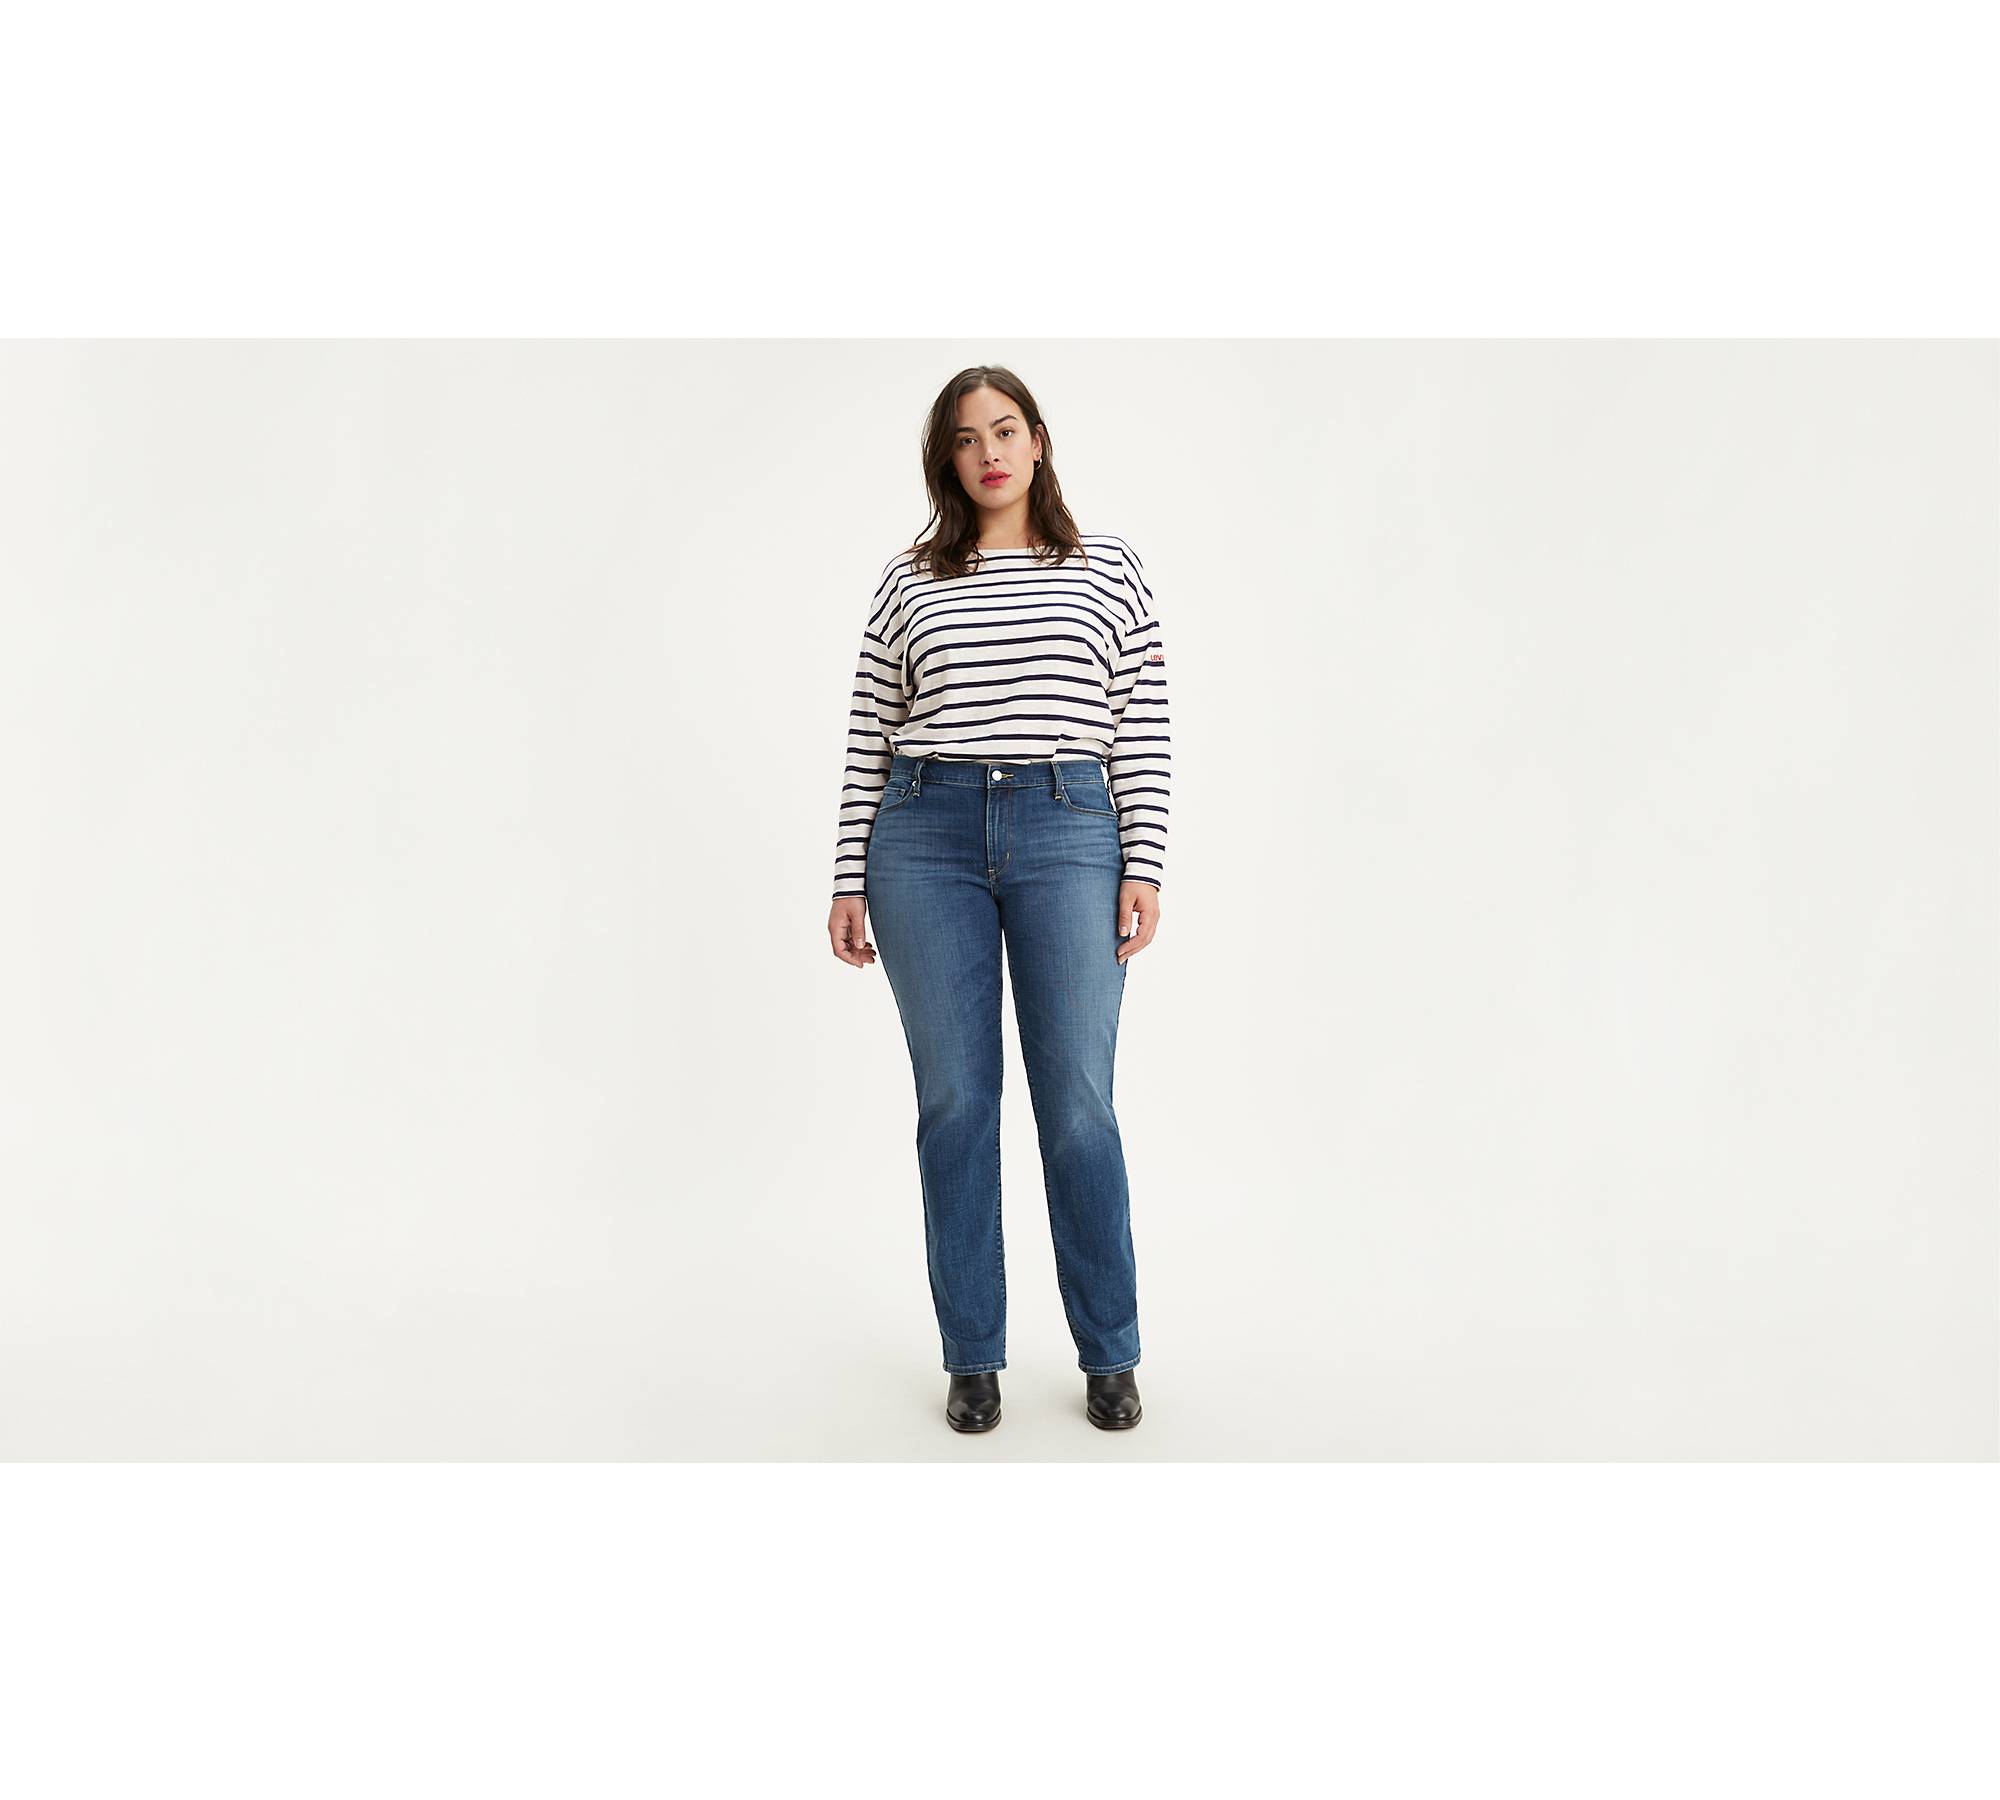 Levi's Plus Size Mid Rise Classic Bootcut Jeans